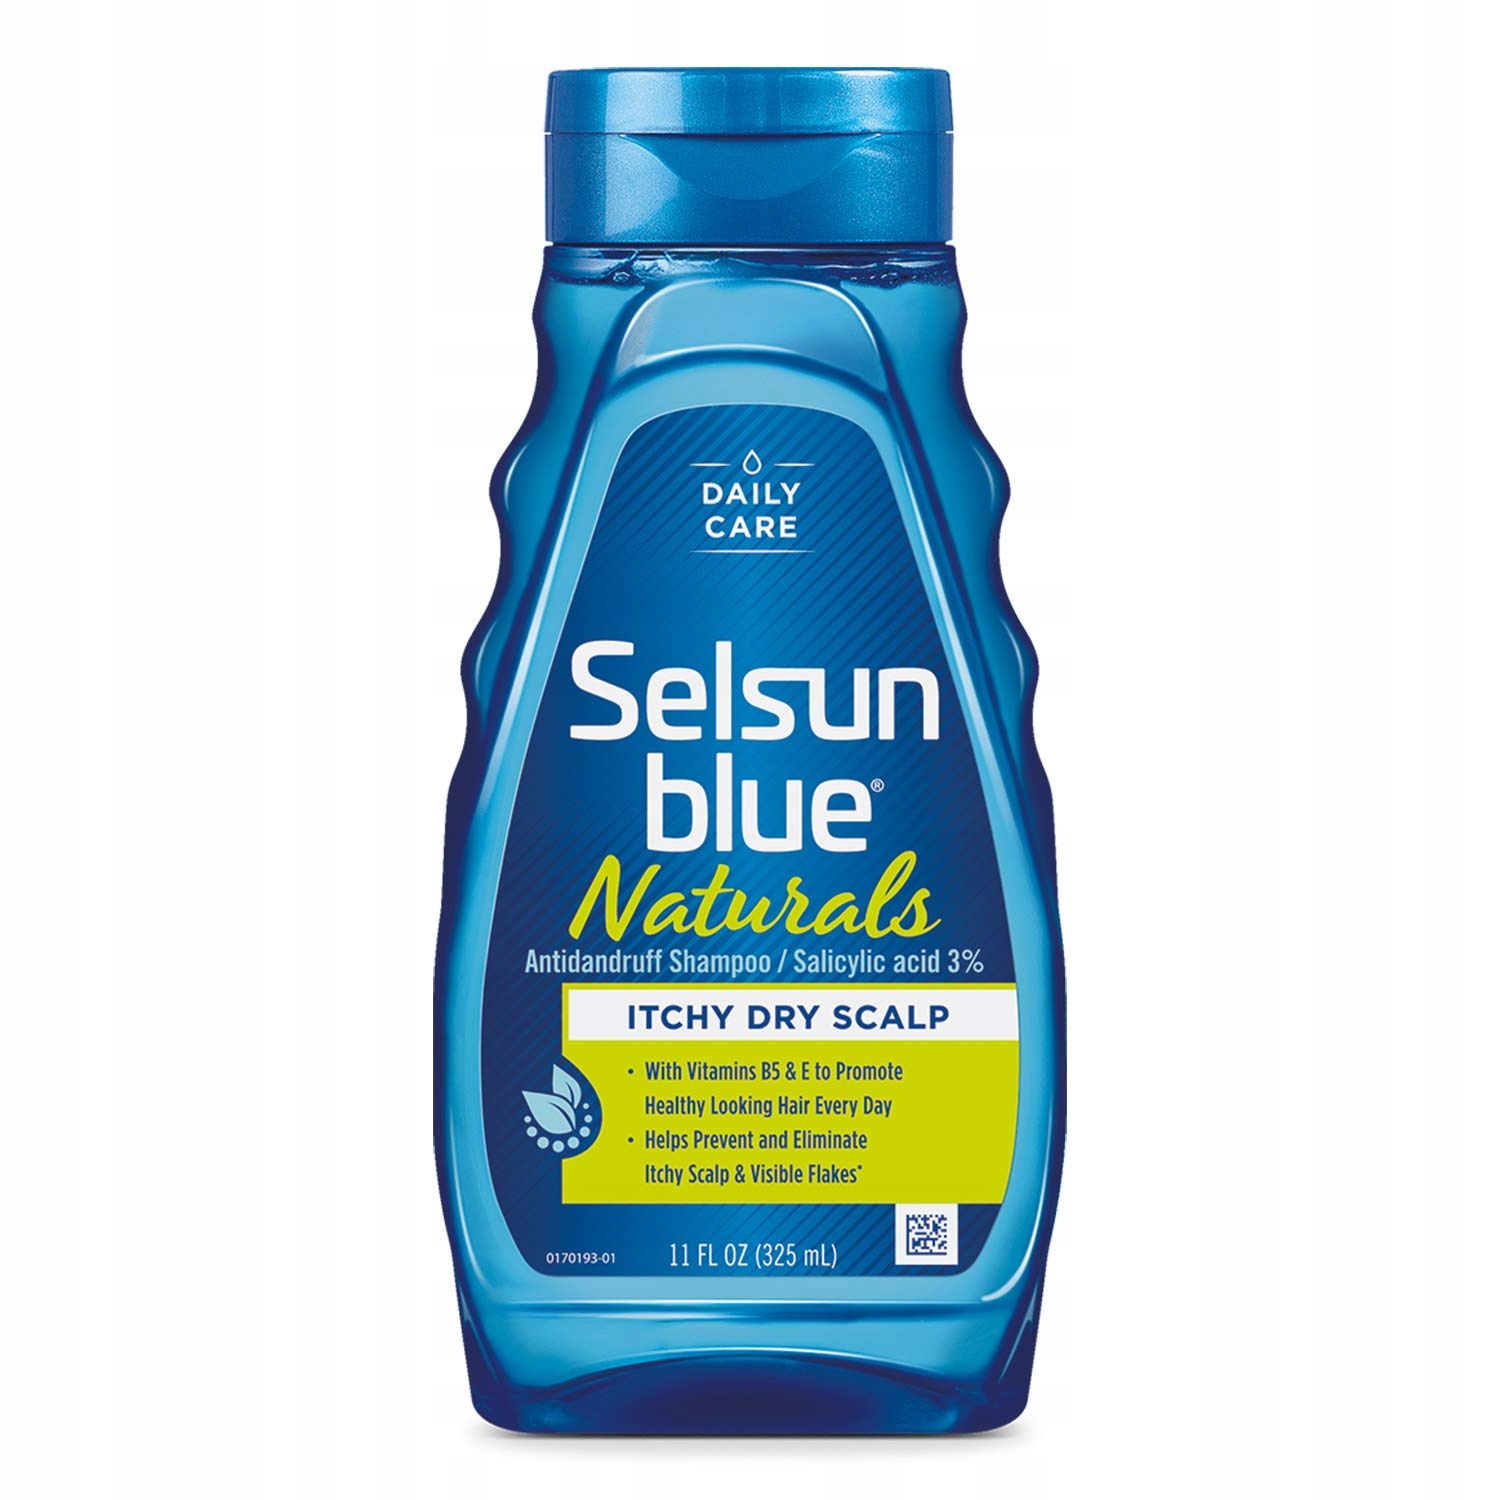 selsun blue włosy normalne szampon leczniczy 125 ml